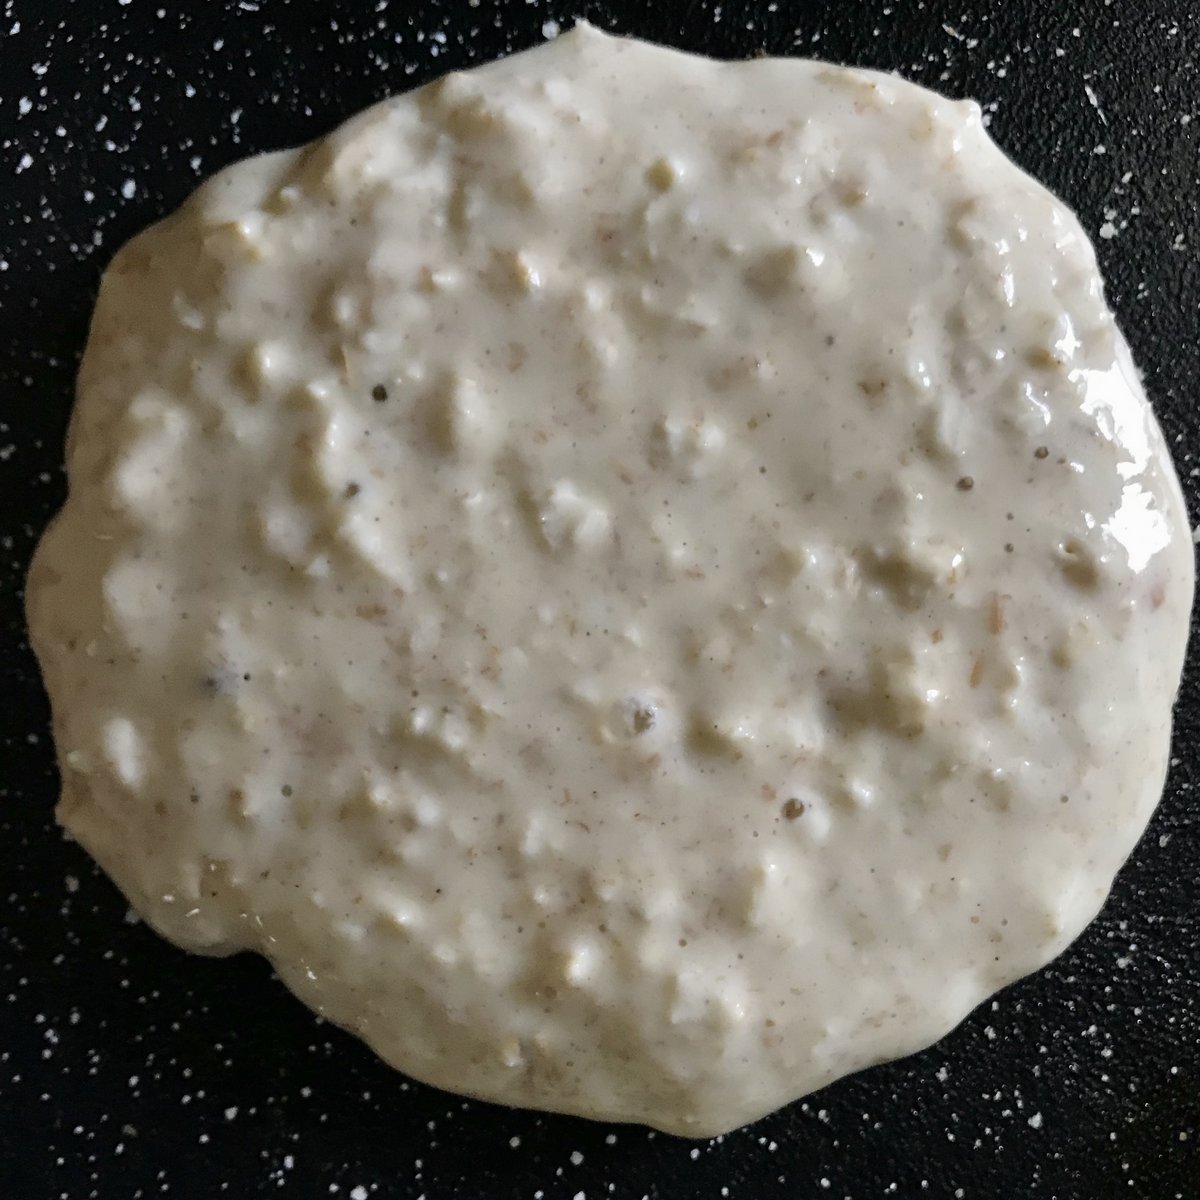 A single pancake on a griddle pan.